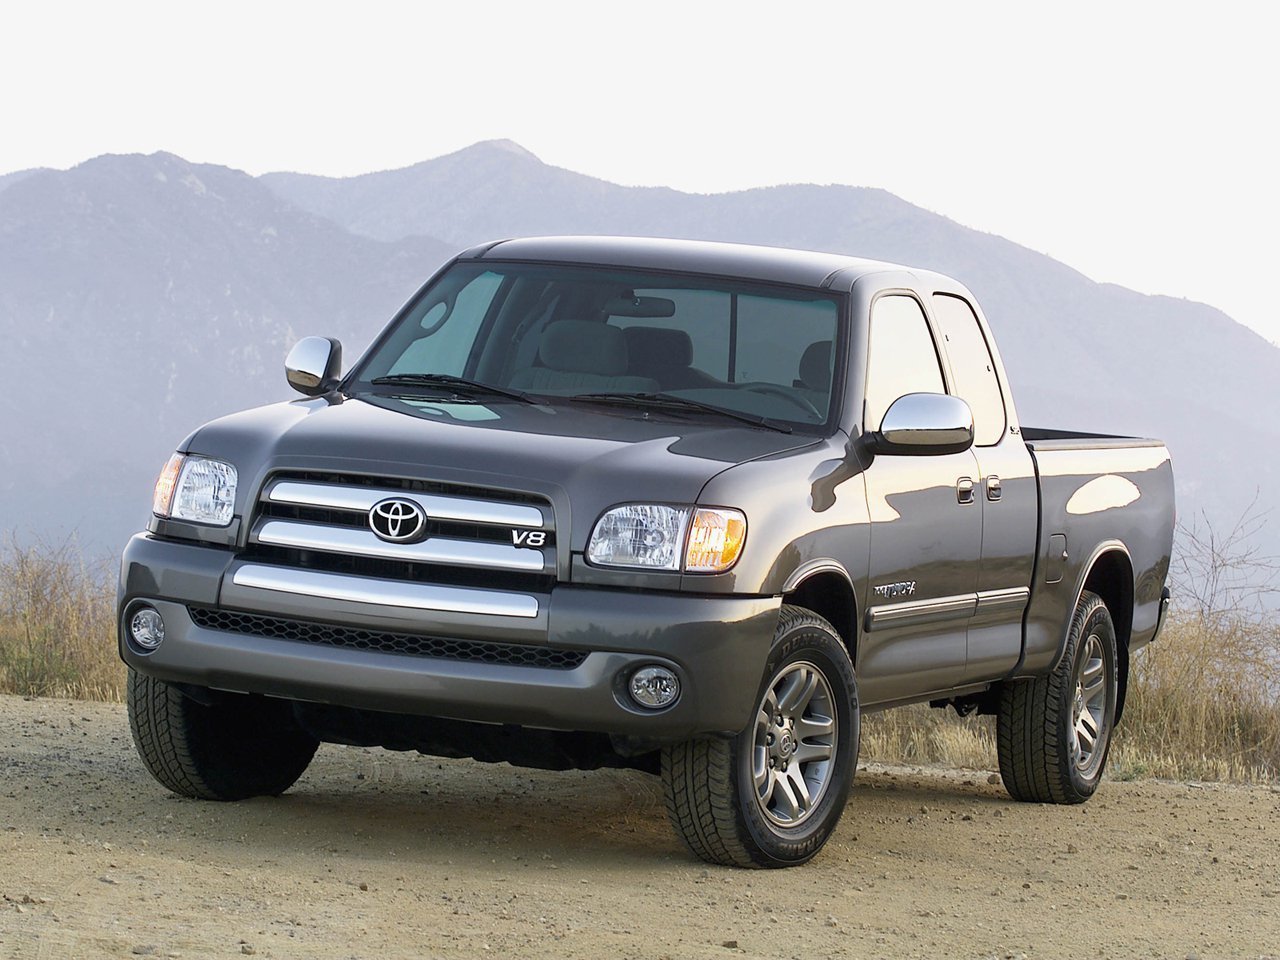 Снижаем расход Toyota Tundra на топливо, устанавливаем ГБО